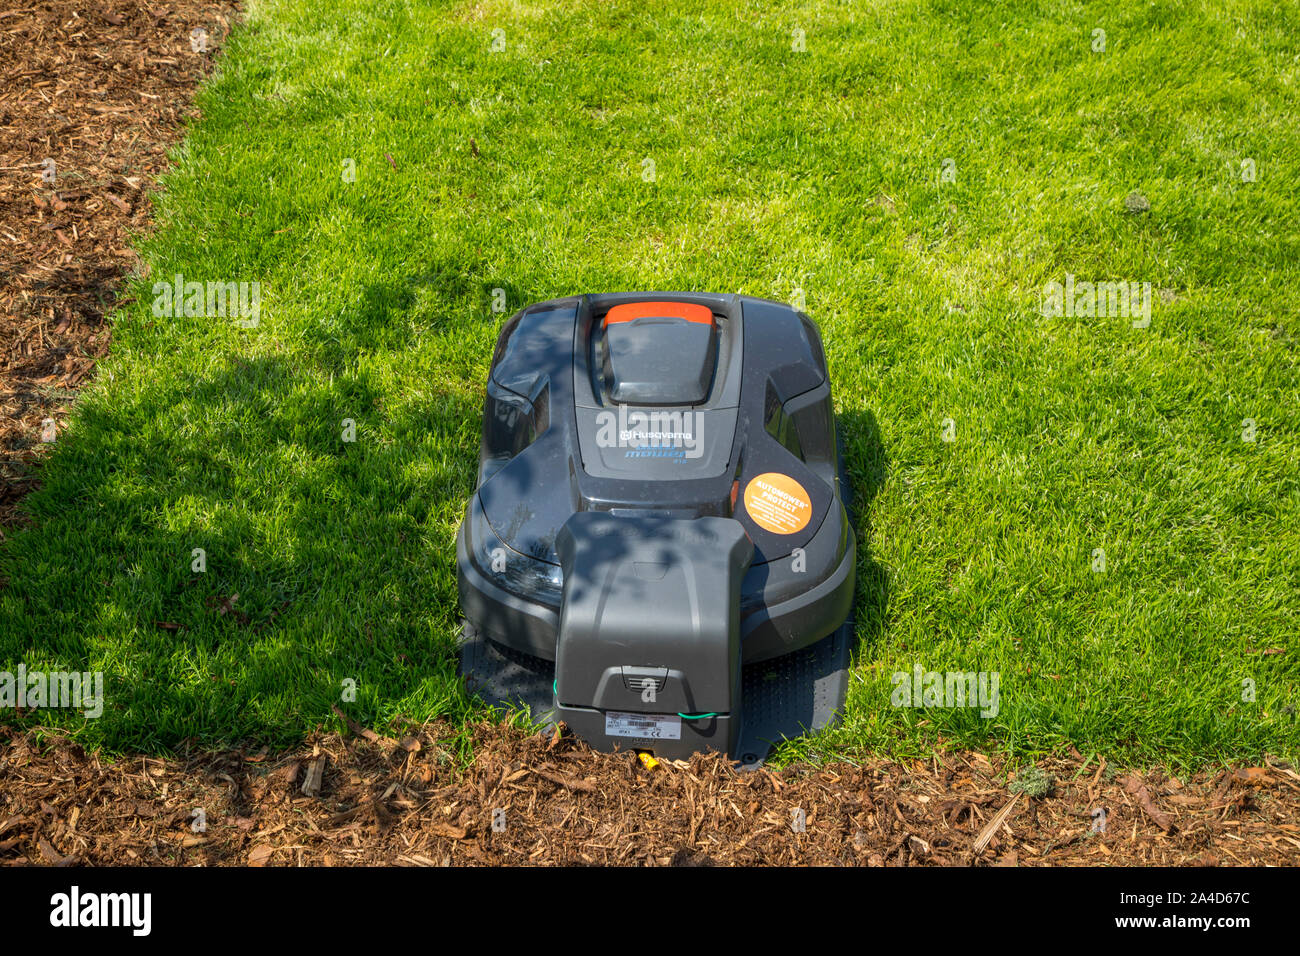 Tondeuse robot, de Husqvarna, tond la pelouse, automatiquement Banque D'Images